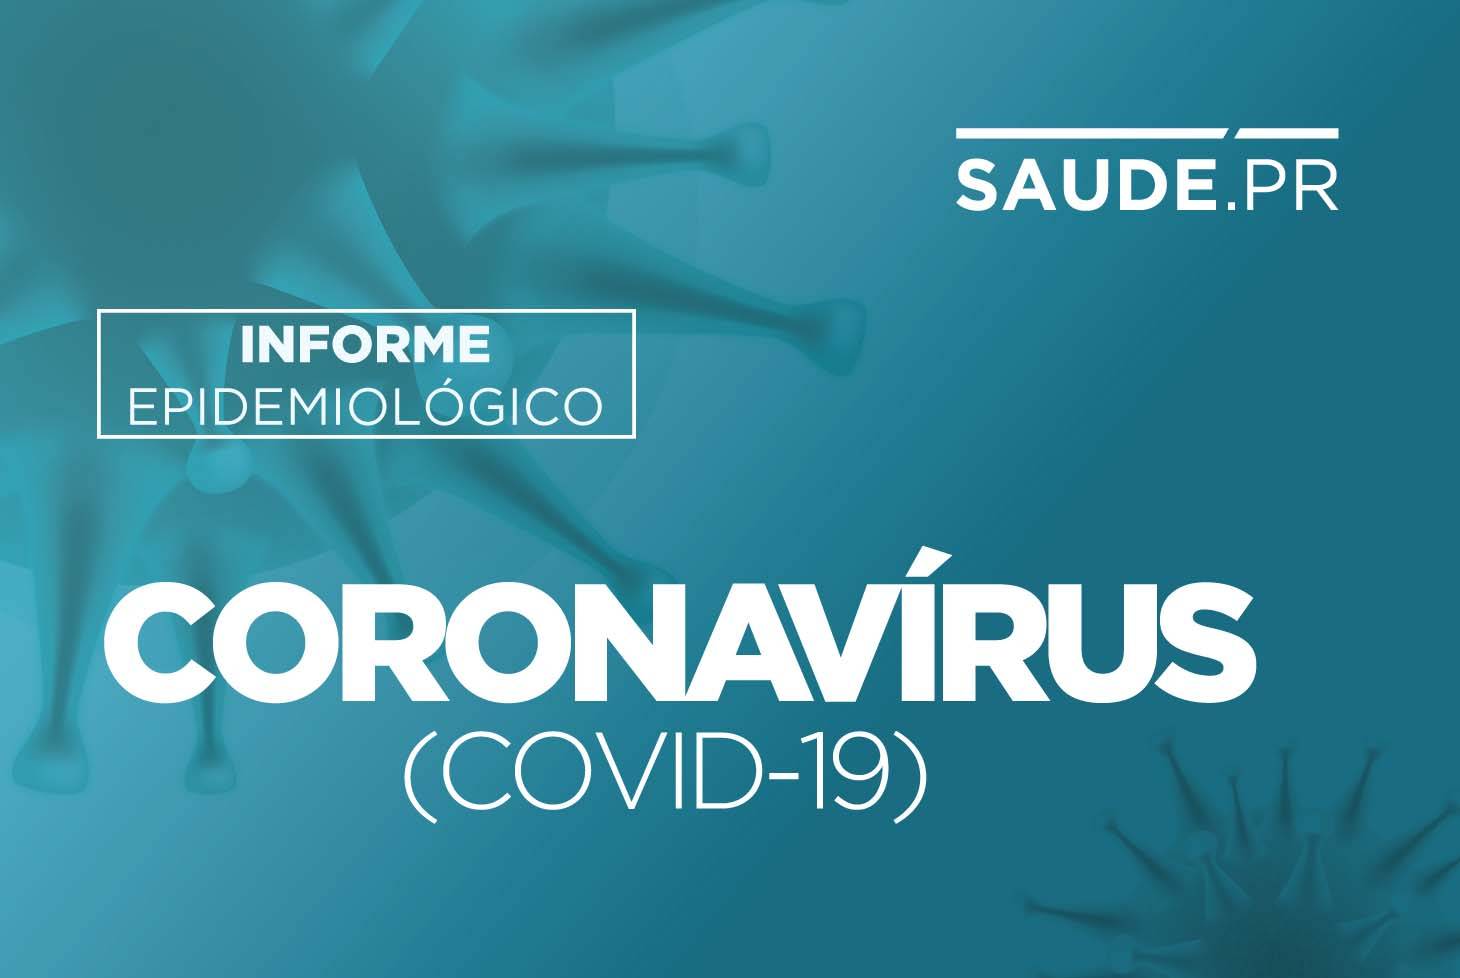 Paraná registra 3.607 novos casos de Covid-19. Já foram aplicadas 331.260 doses da vacina